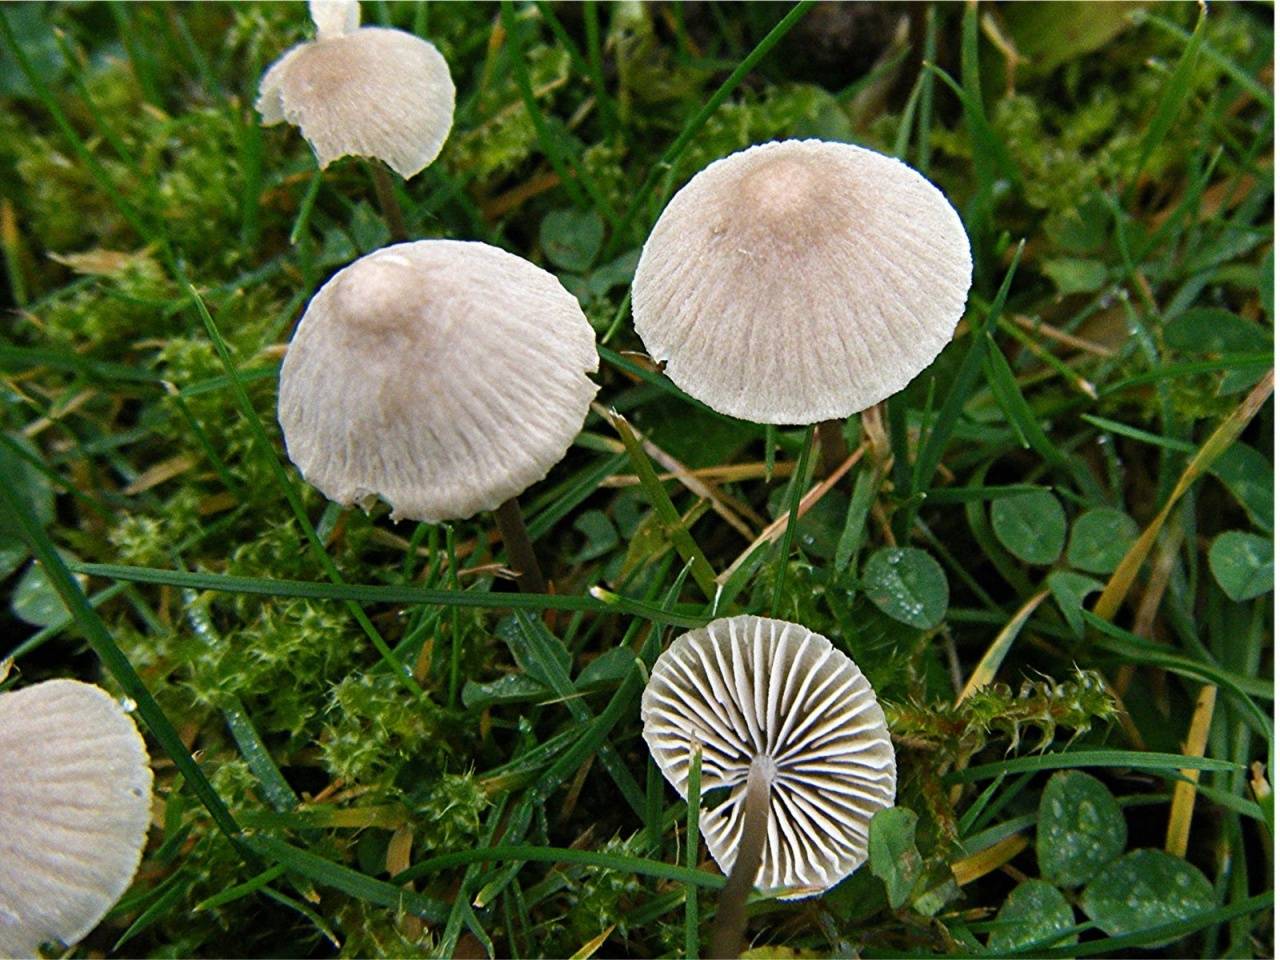 Мицена чистая (mycena pura): фото, описание и действие яда гриба